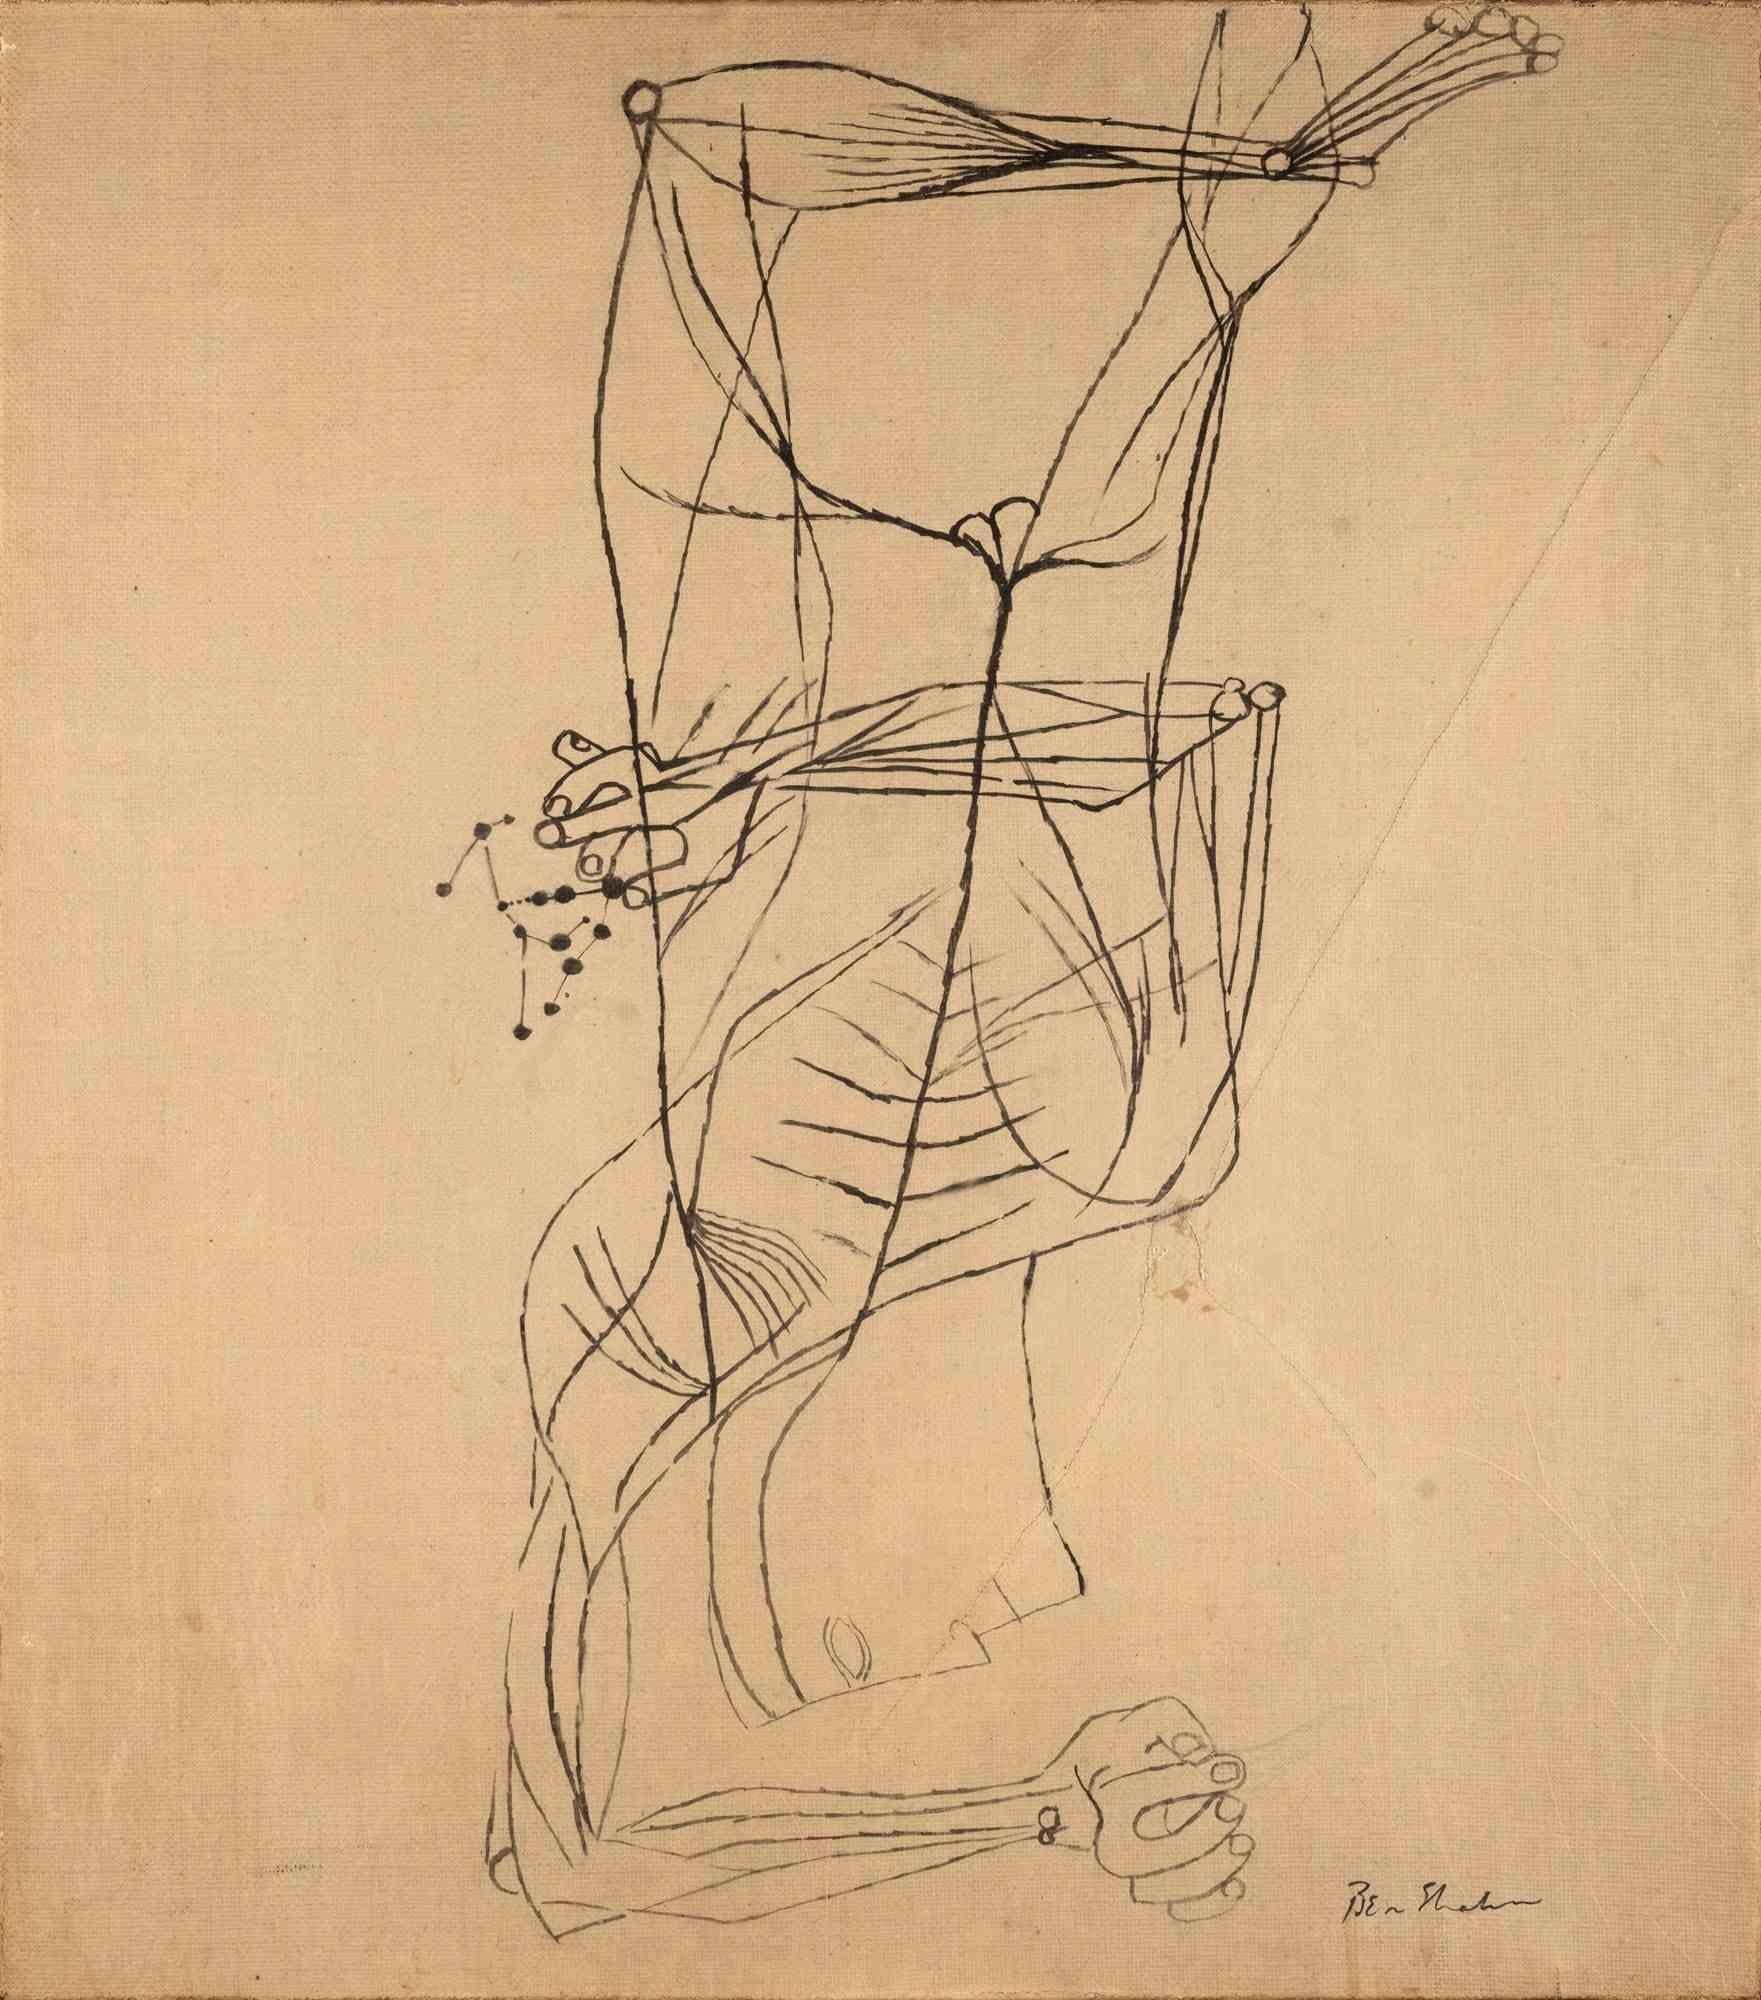 Untitled ist eine Zeichnung von Ben Shahn (Kovno 1898-New York 1969) 

Federzeichnung auf Papier, aufgetragen auf Leinwand.
Handsigniert unten rechts: Ben Shahn.
Einige leichte Falten und Verfärbungen.
Prov: Rom, Sammlung Giovanni Carandente,